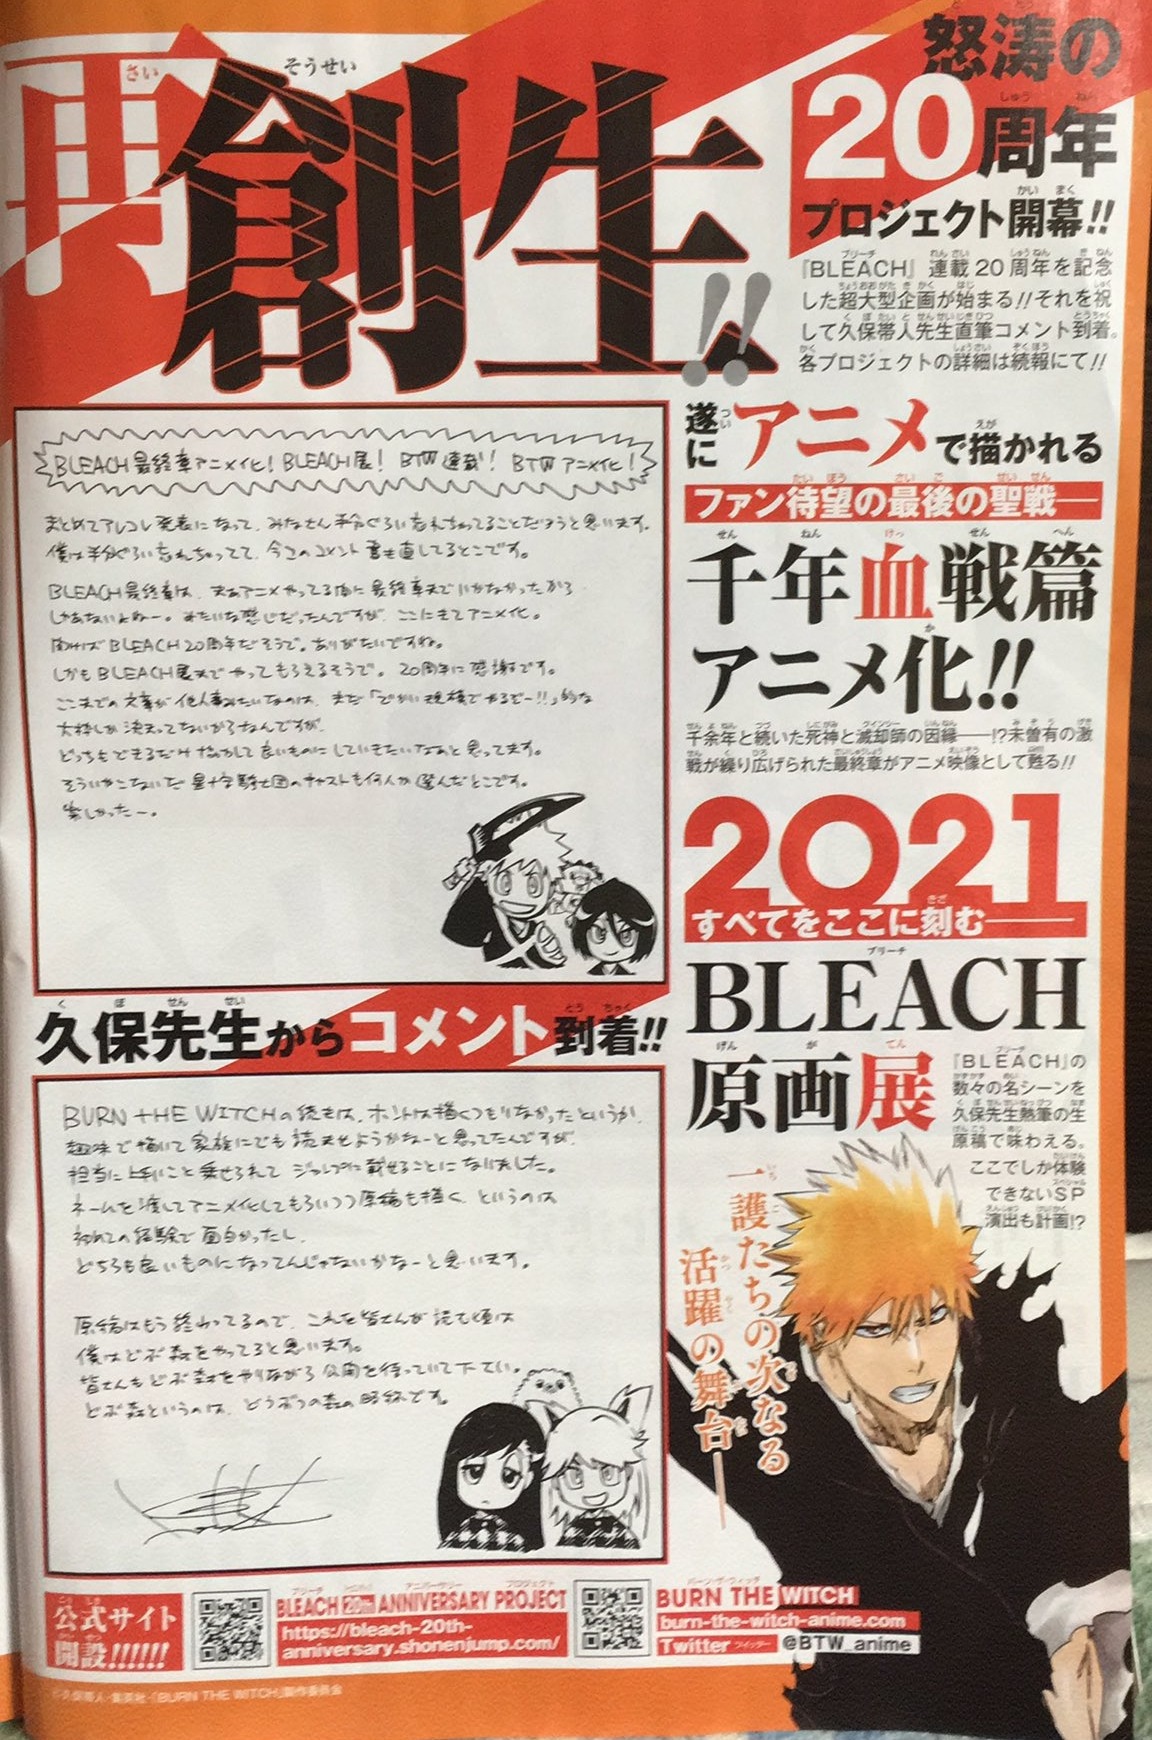 Bleach Arc Final Animé Annonce 2